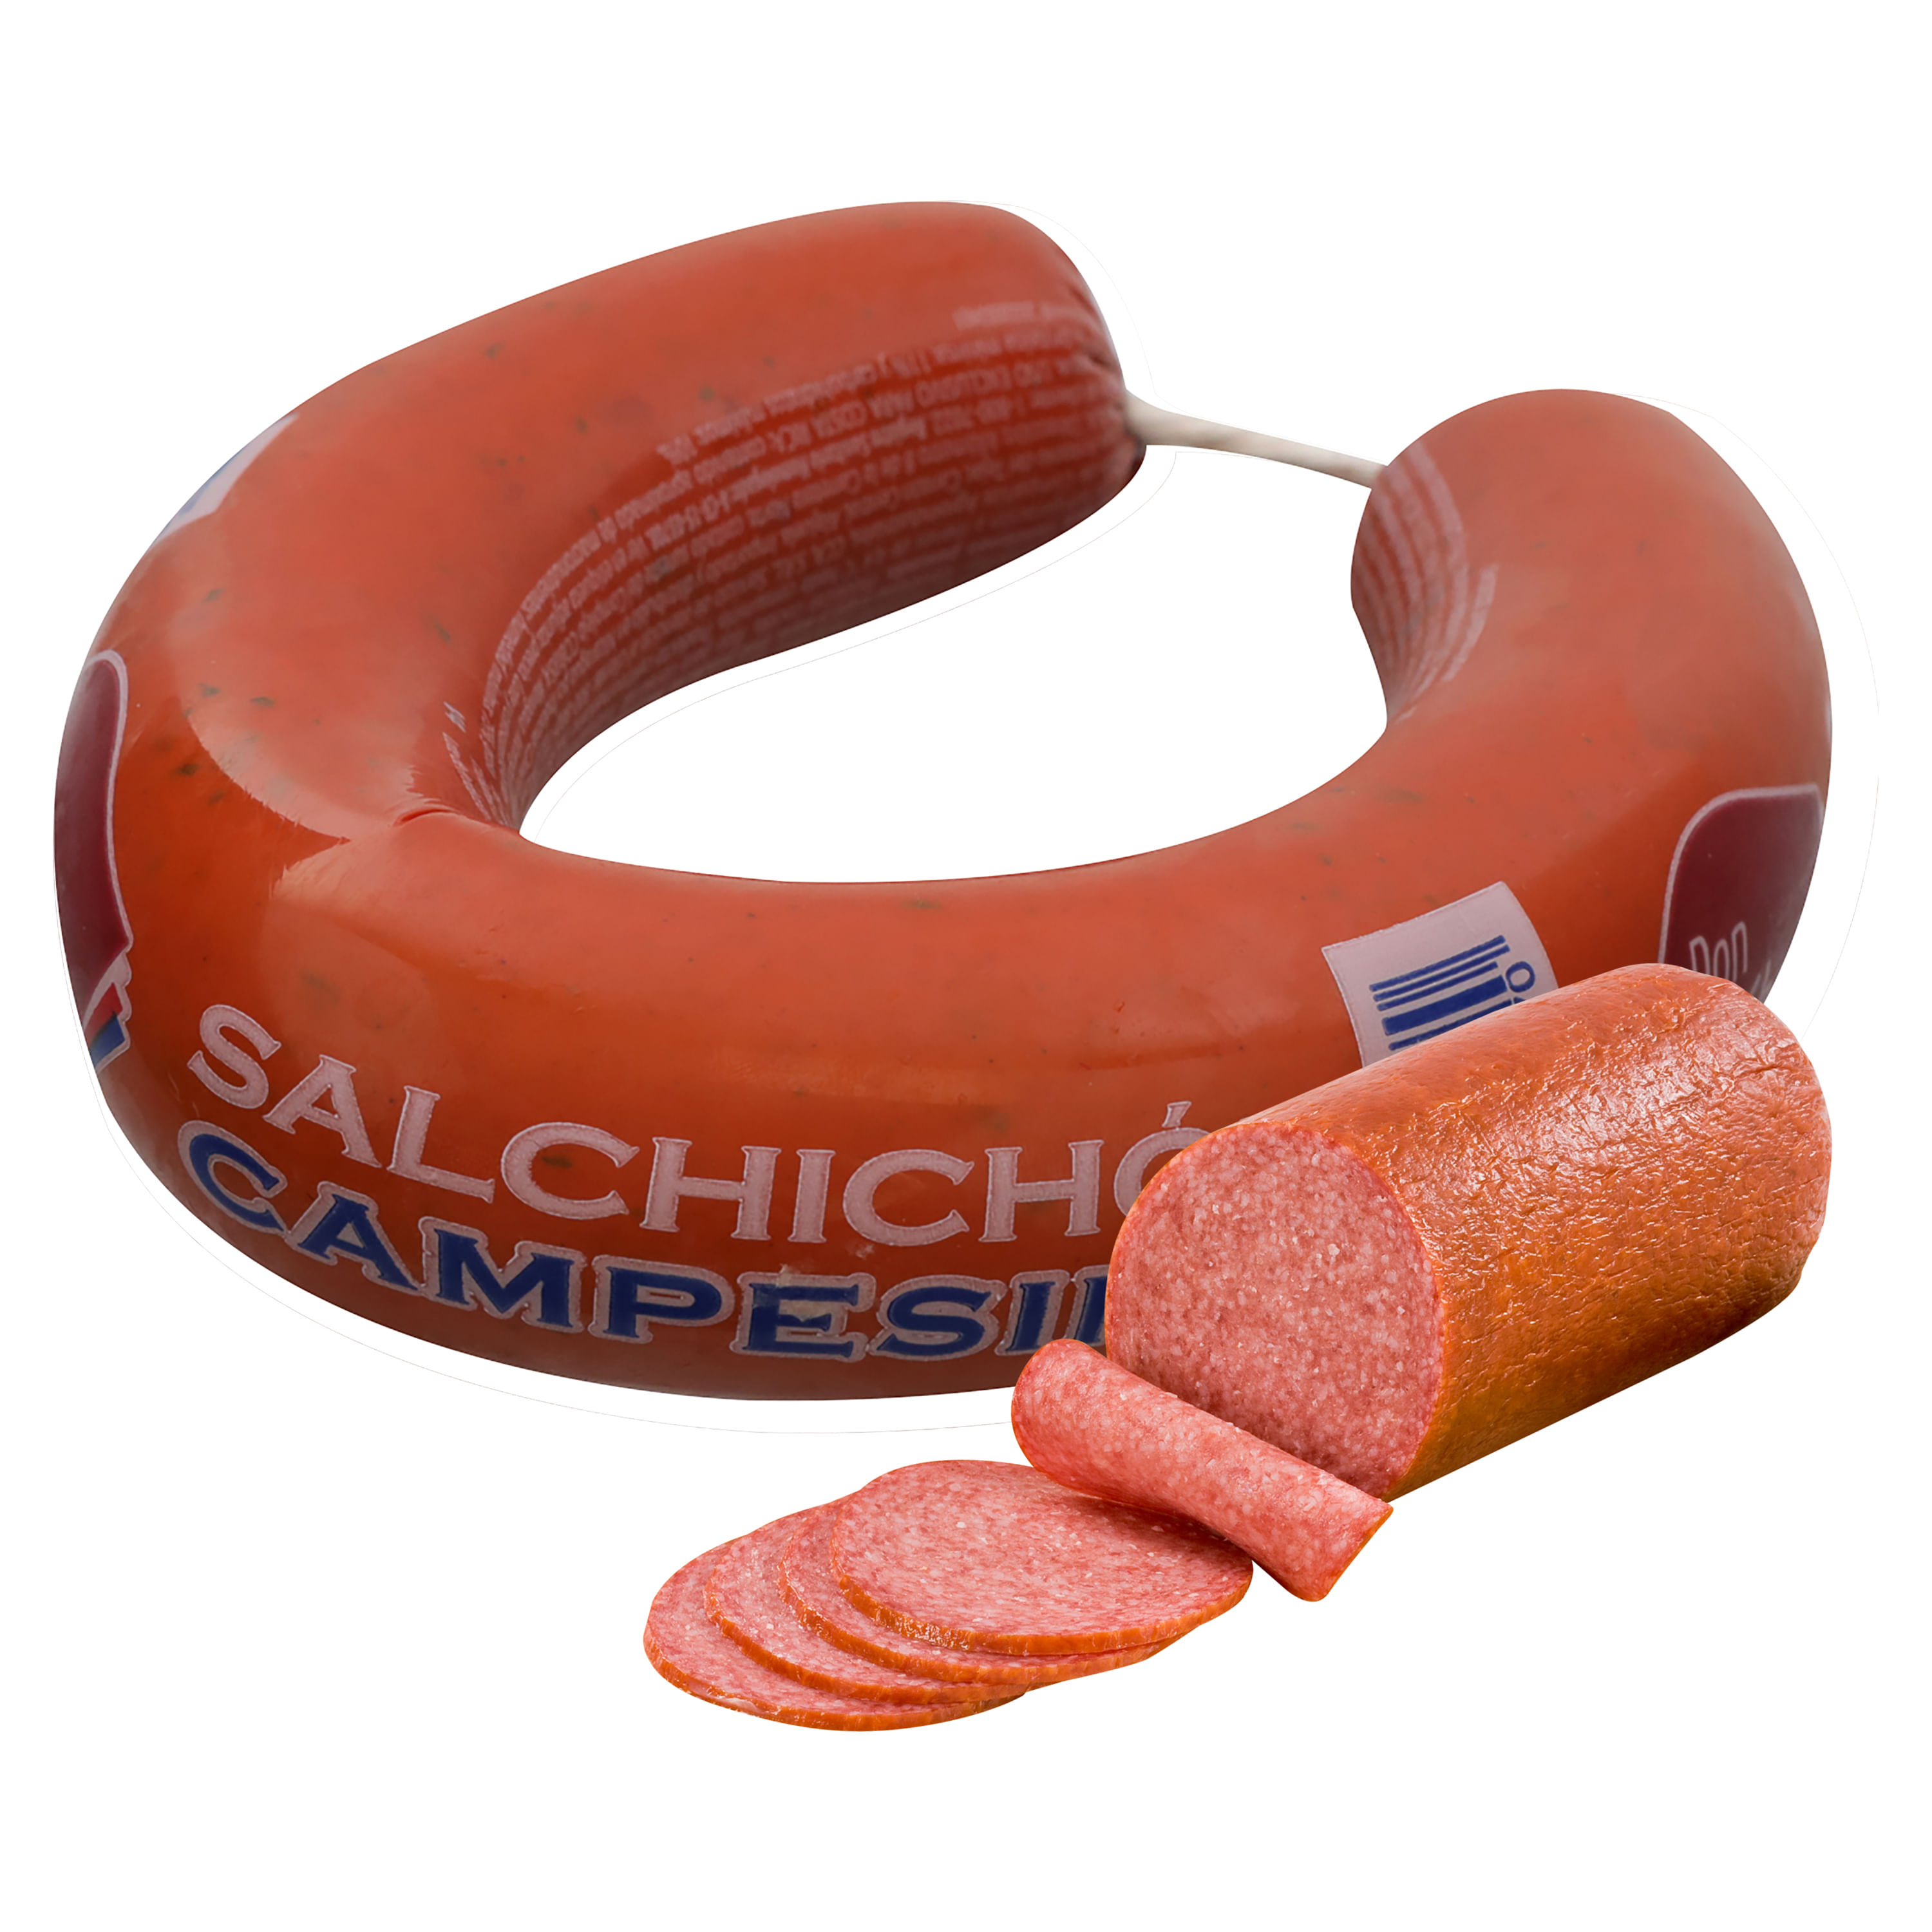 Salchich-n-Campesino-Don-Cristobal-500gr-1-33819